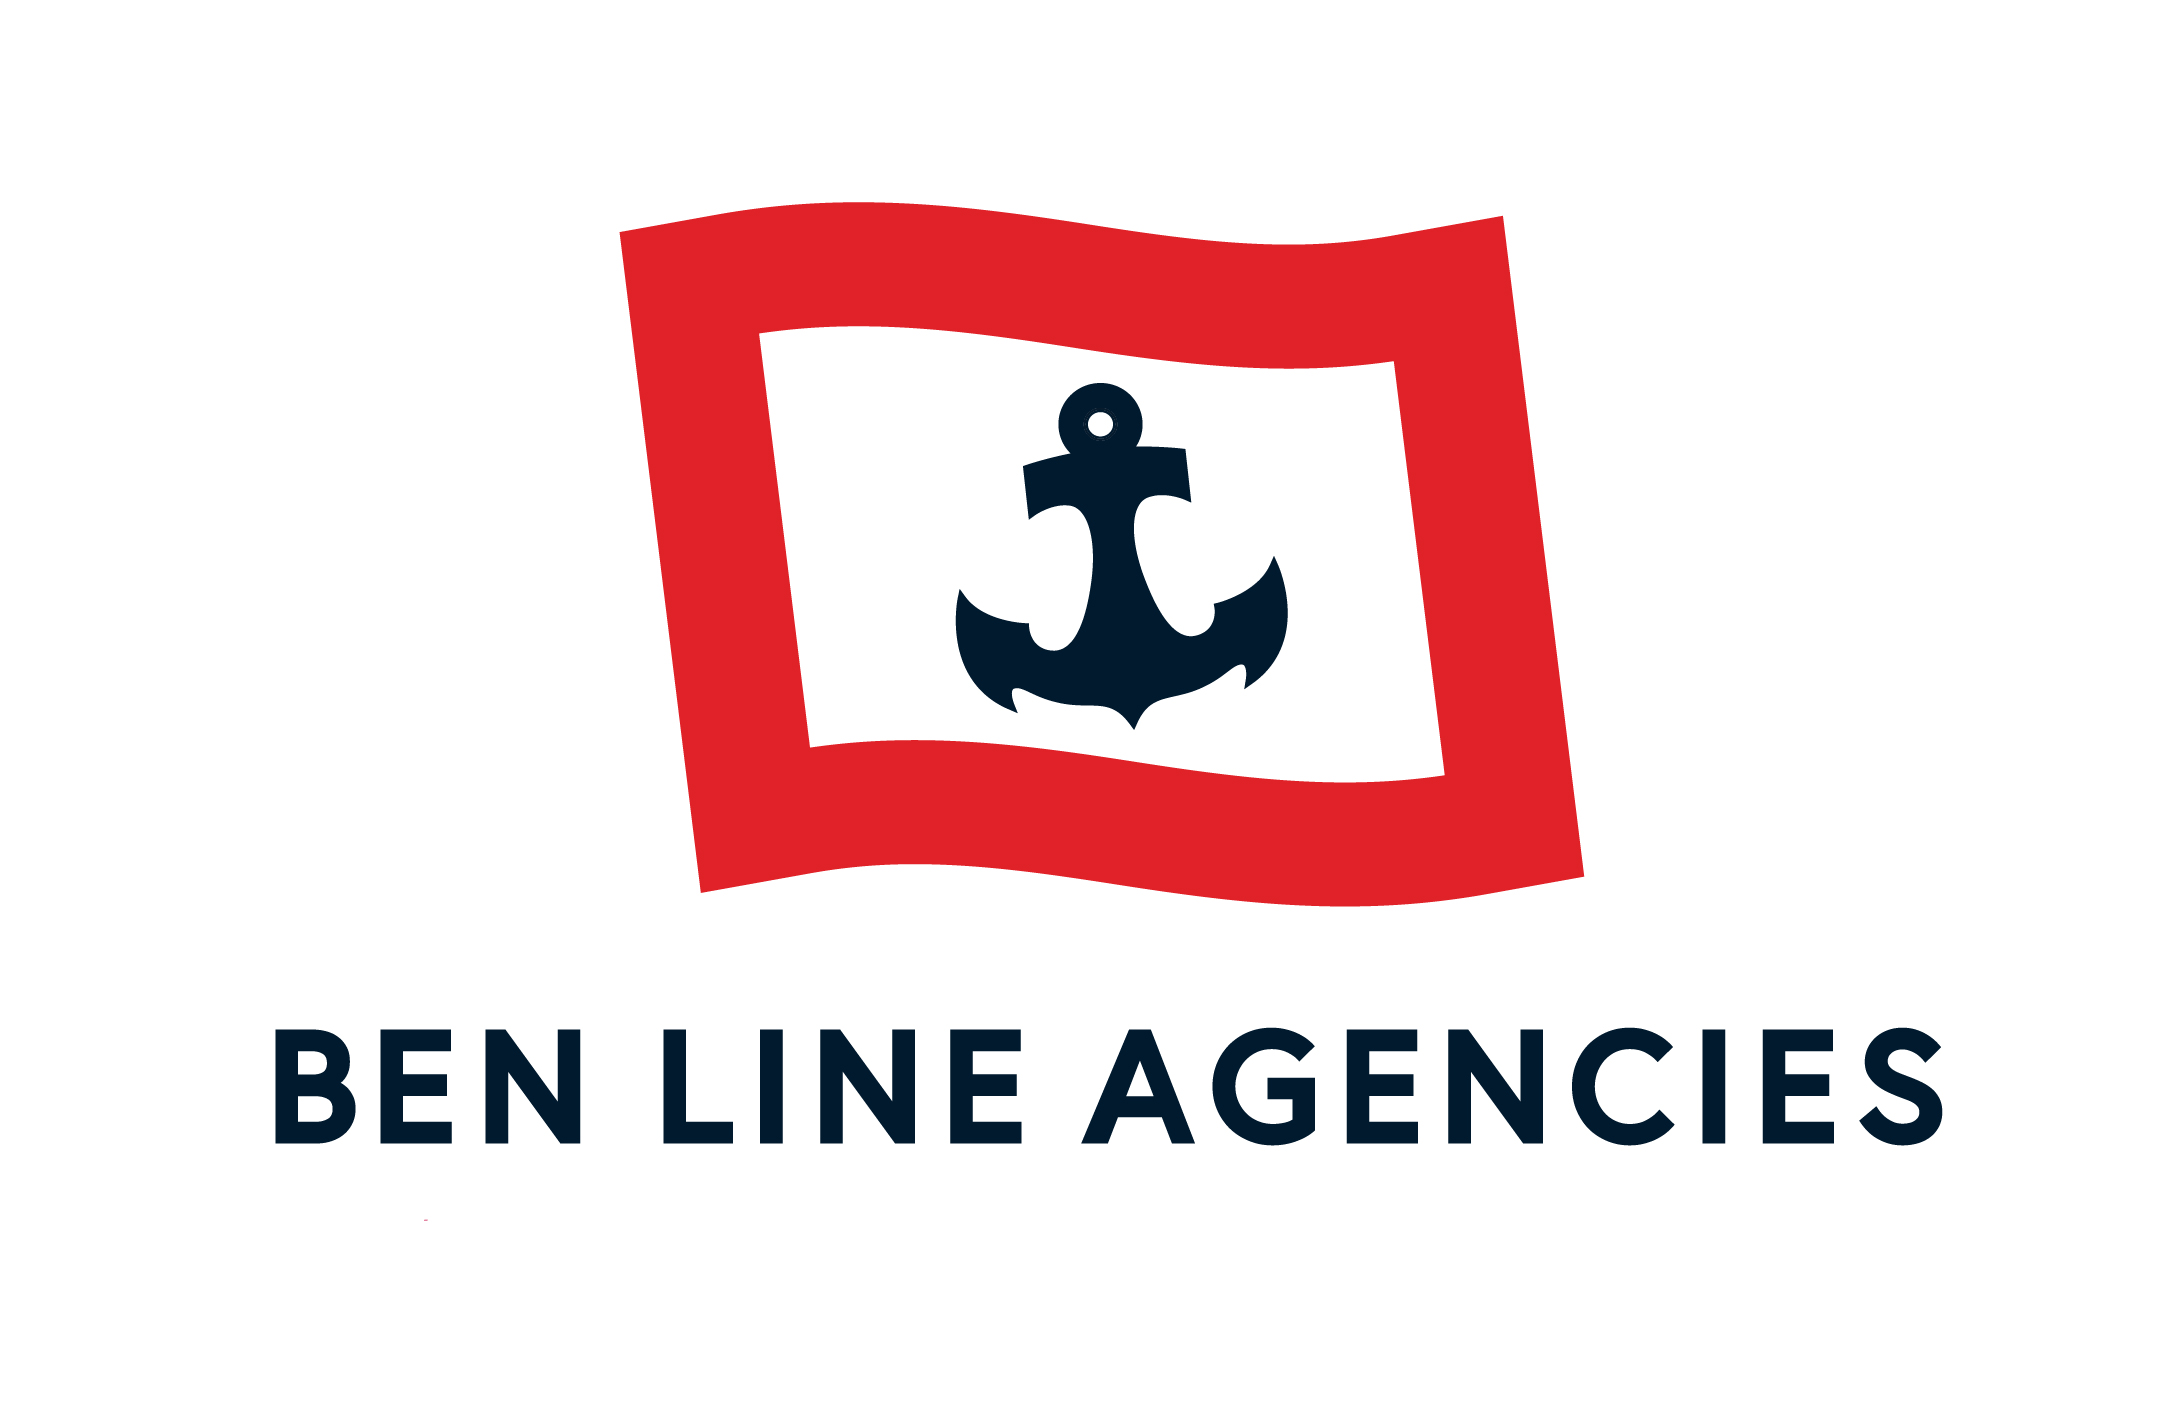 Ben Line Agencies (HK) Ltd